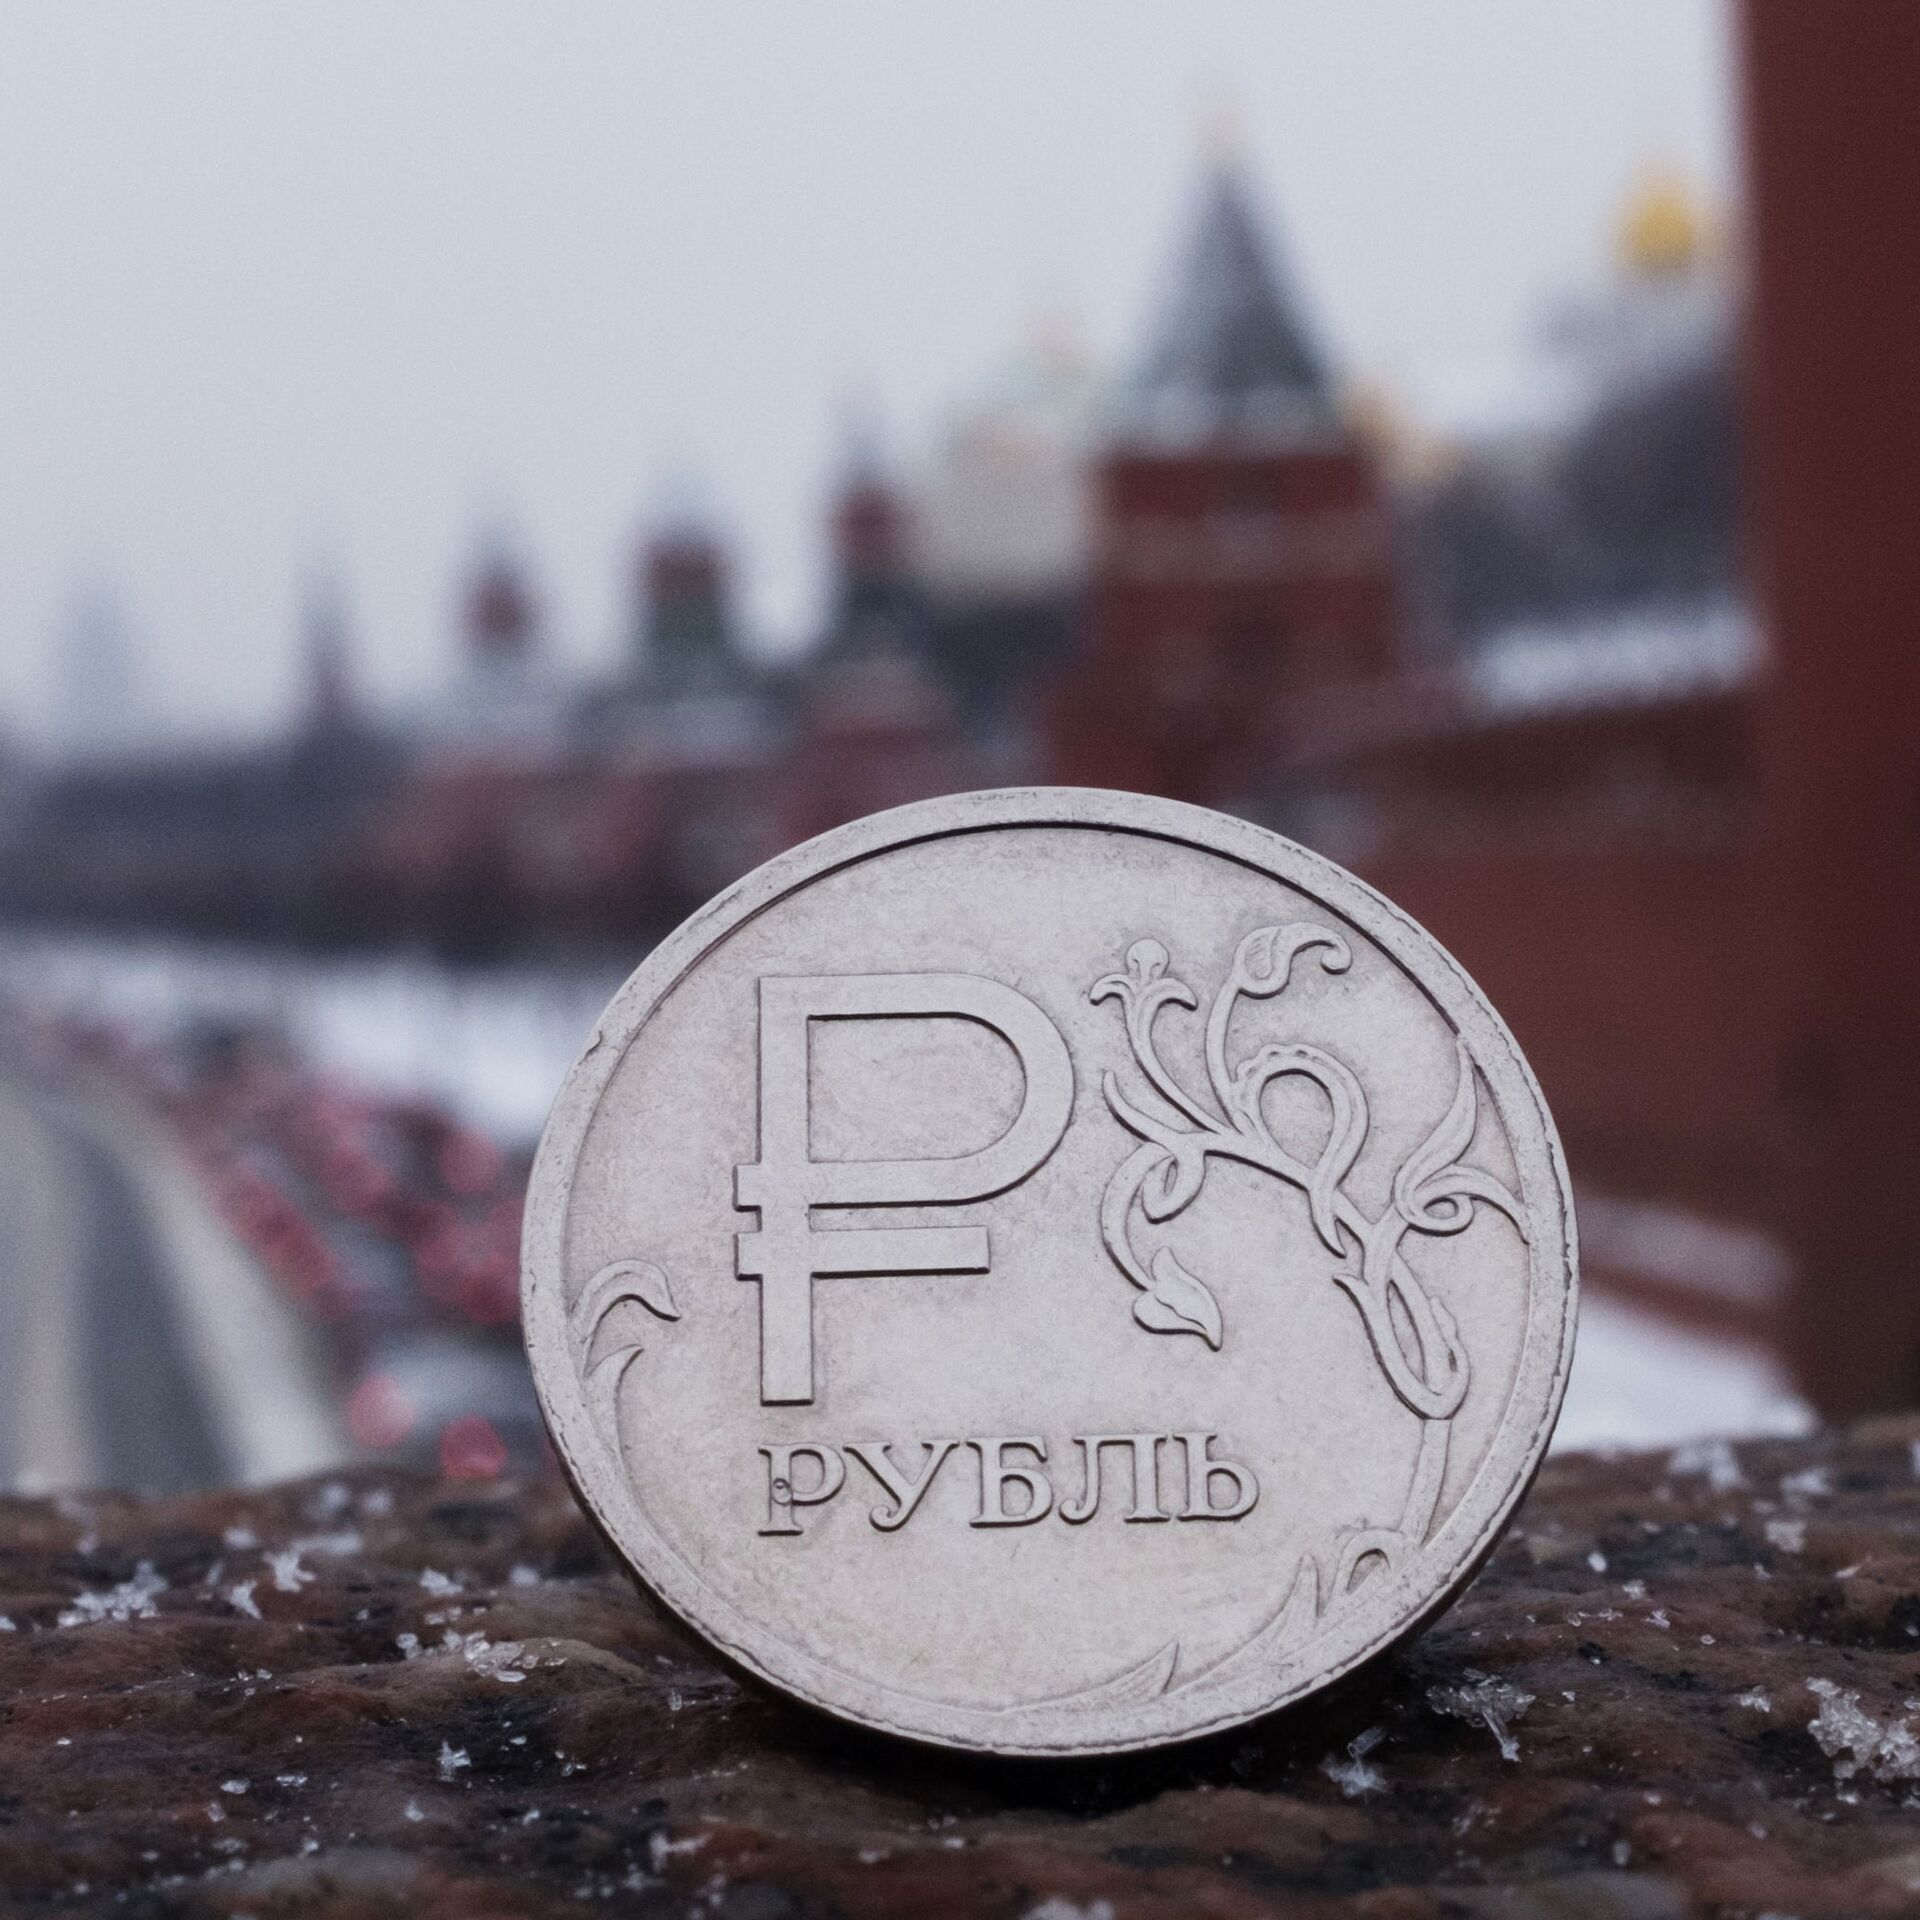 Рубль Орел. Российская валюта. Рубль растет в цене. Финансы Россия заставка на телефон.